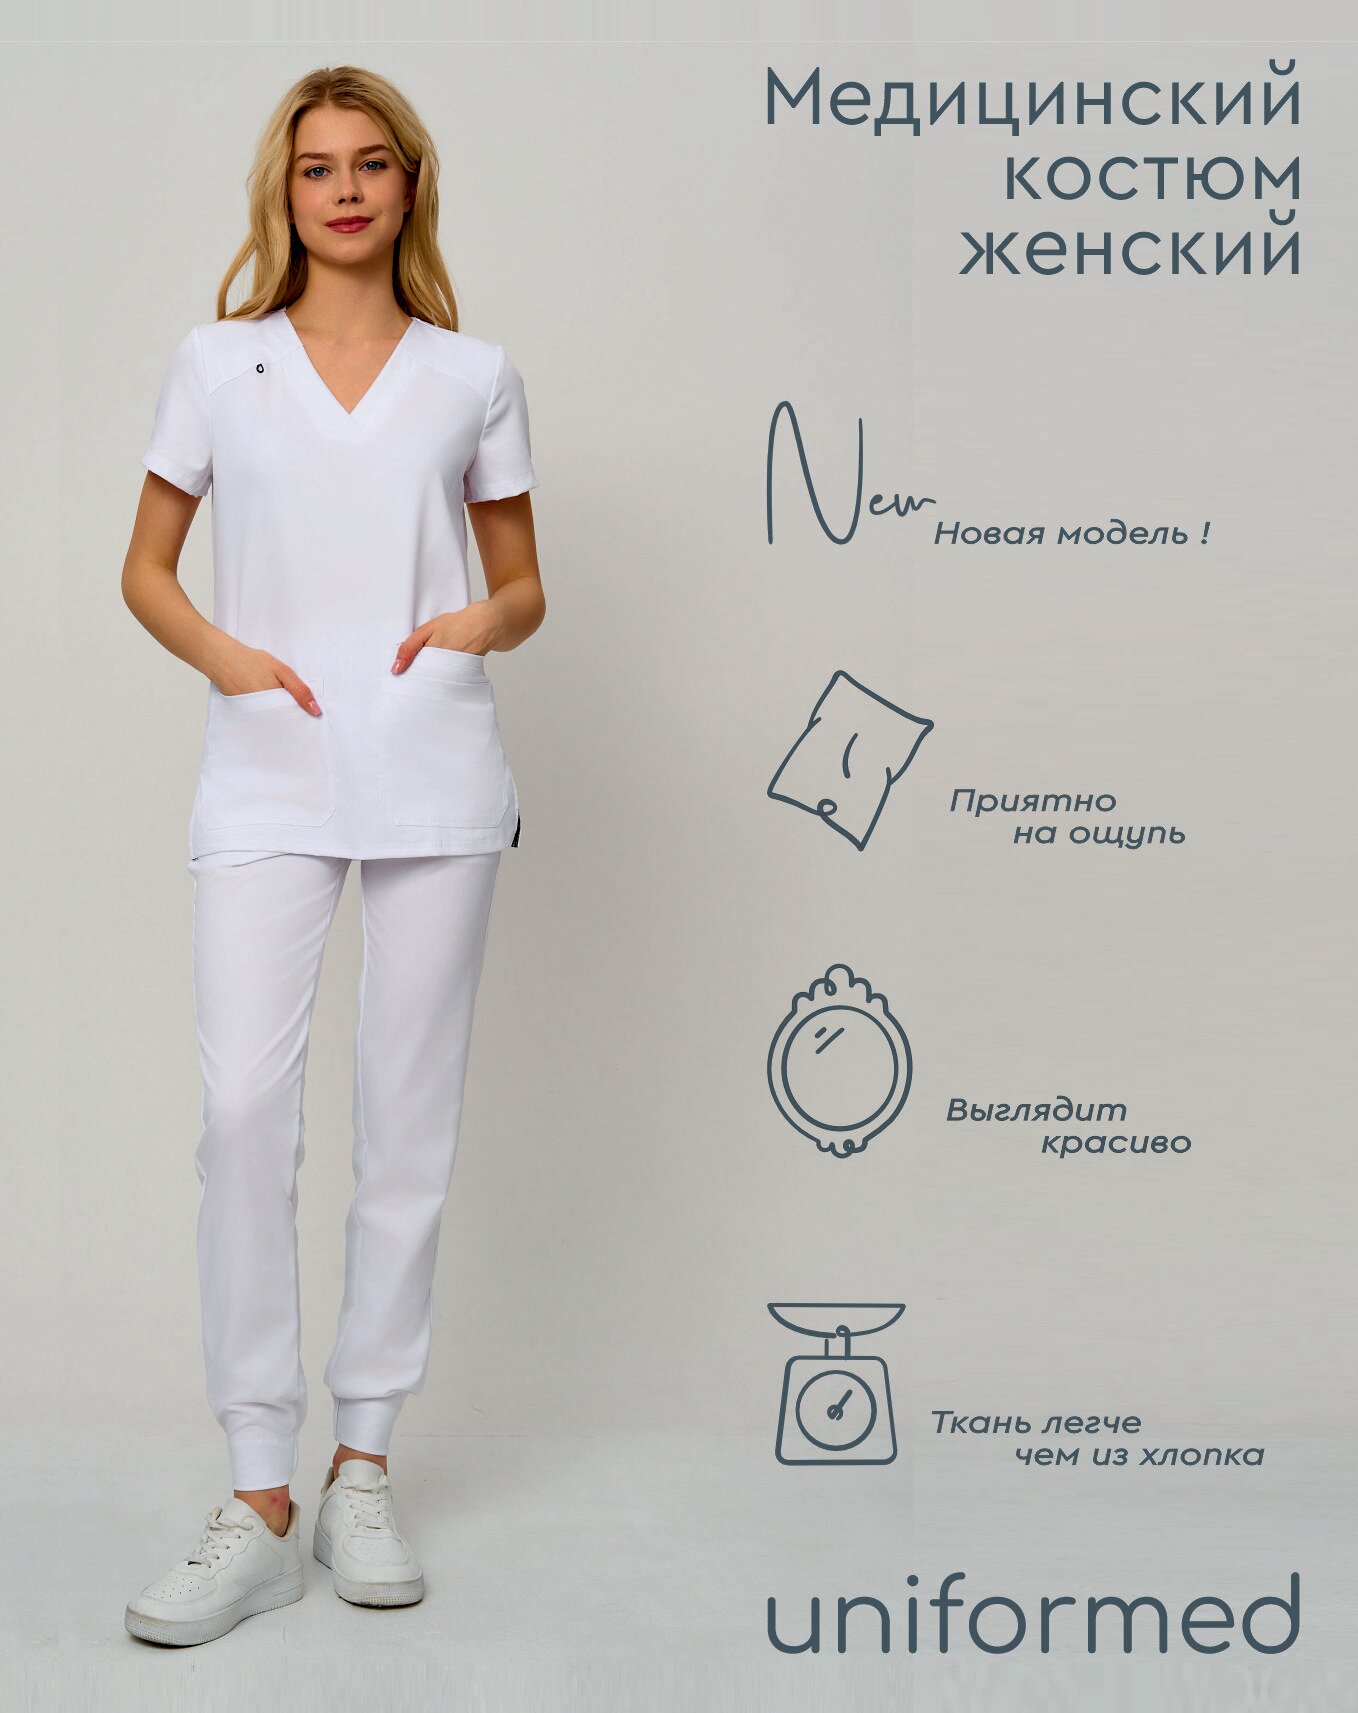 Медицинский женский костюм 419.5.1 Uniformed, ткань вискоза стрейч, рукав короткий, цвет белый, отделка черная, размер 46